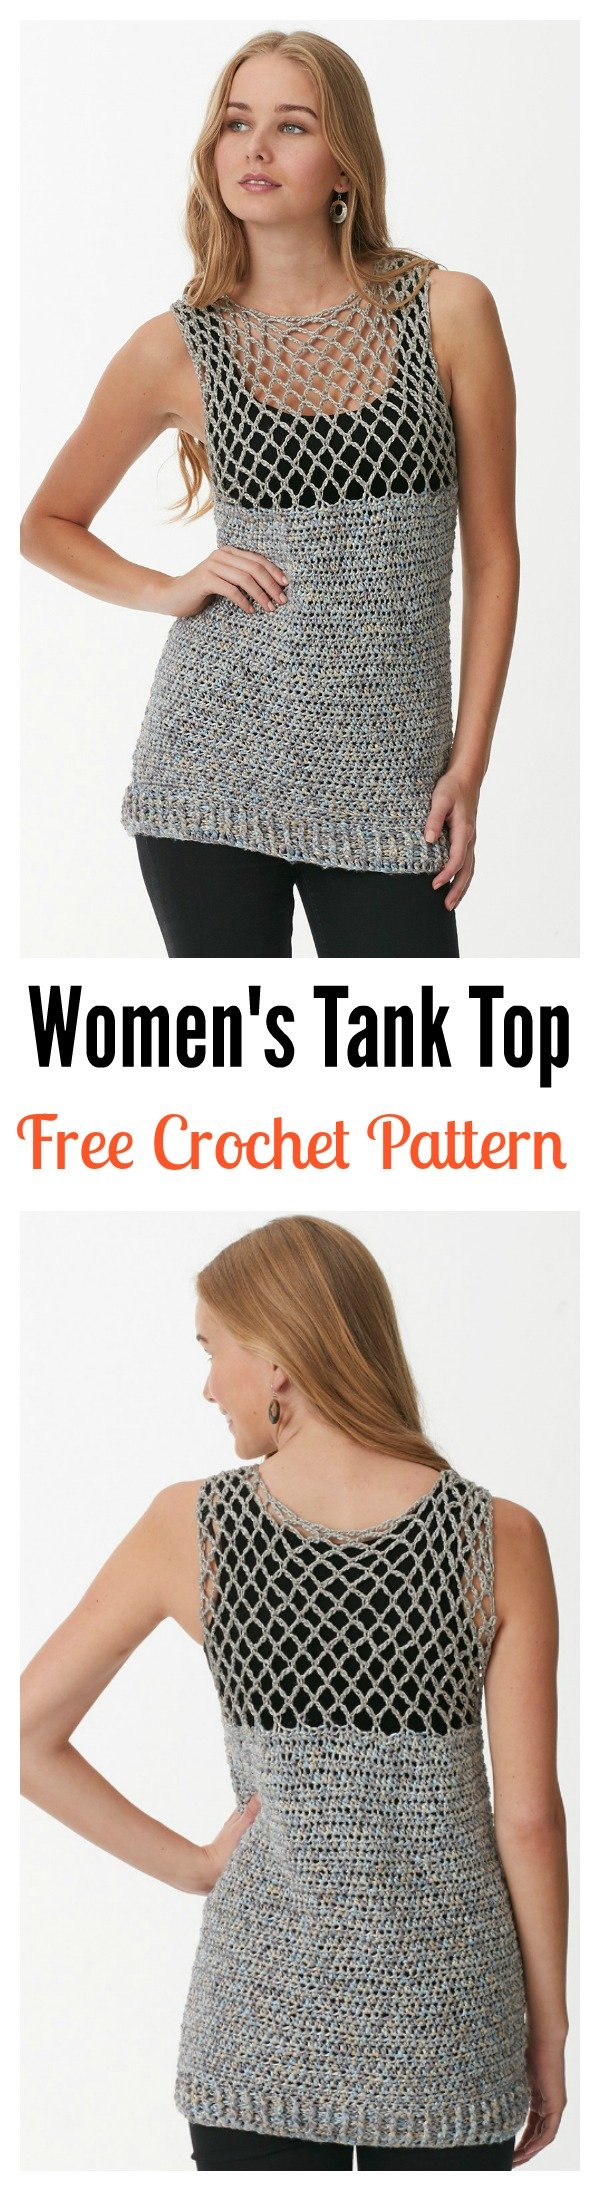 Free Easy Women's Tank Top Crochet Pattern